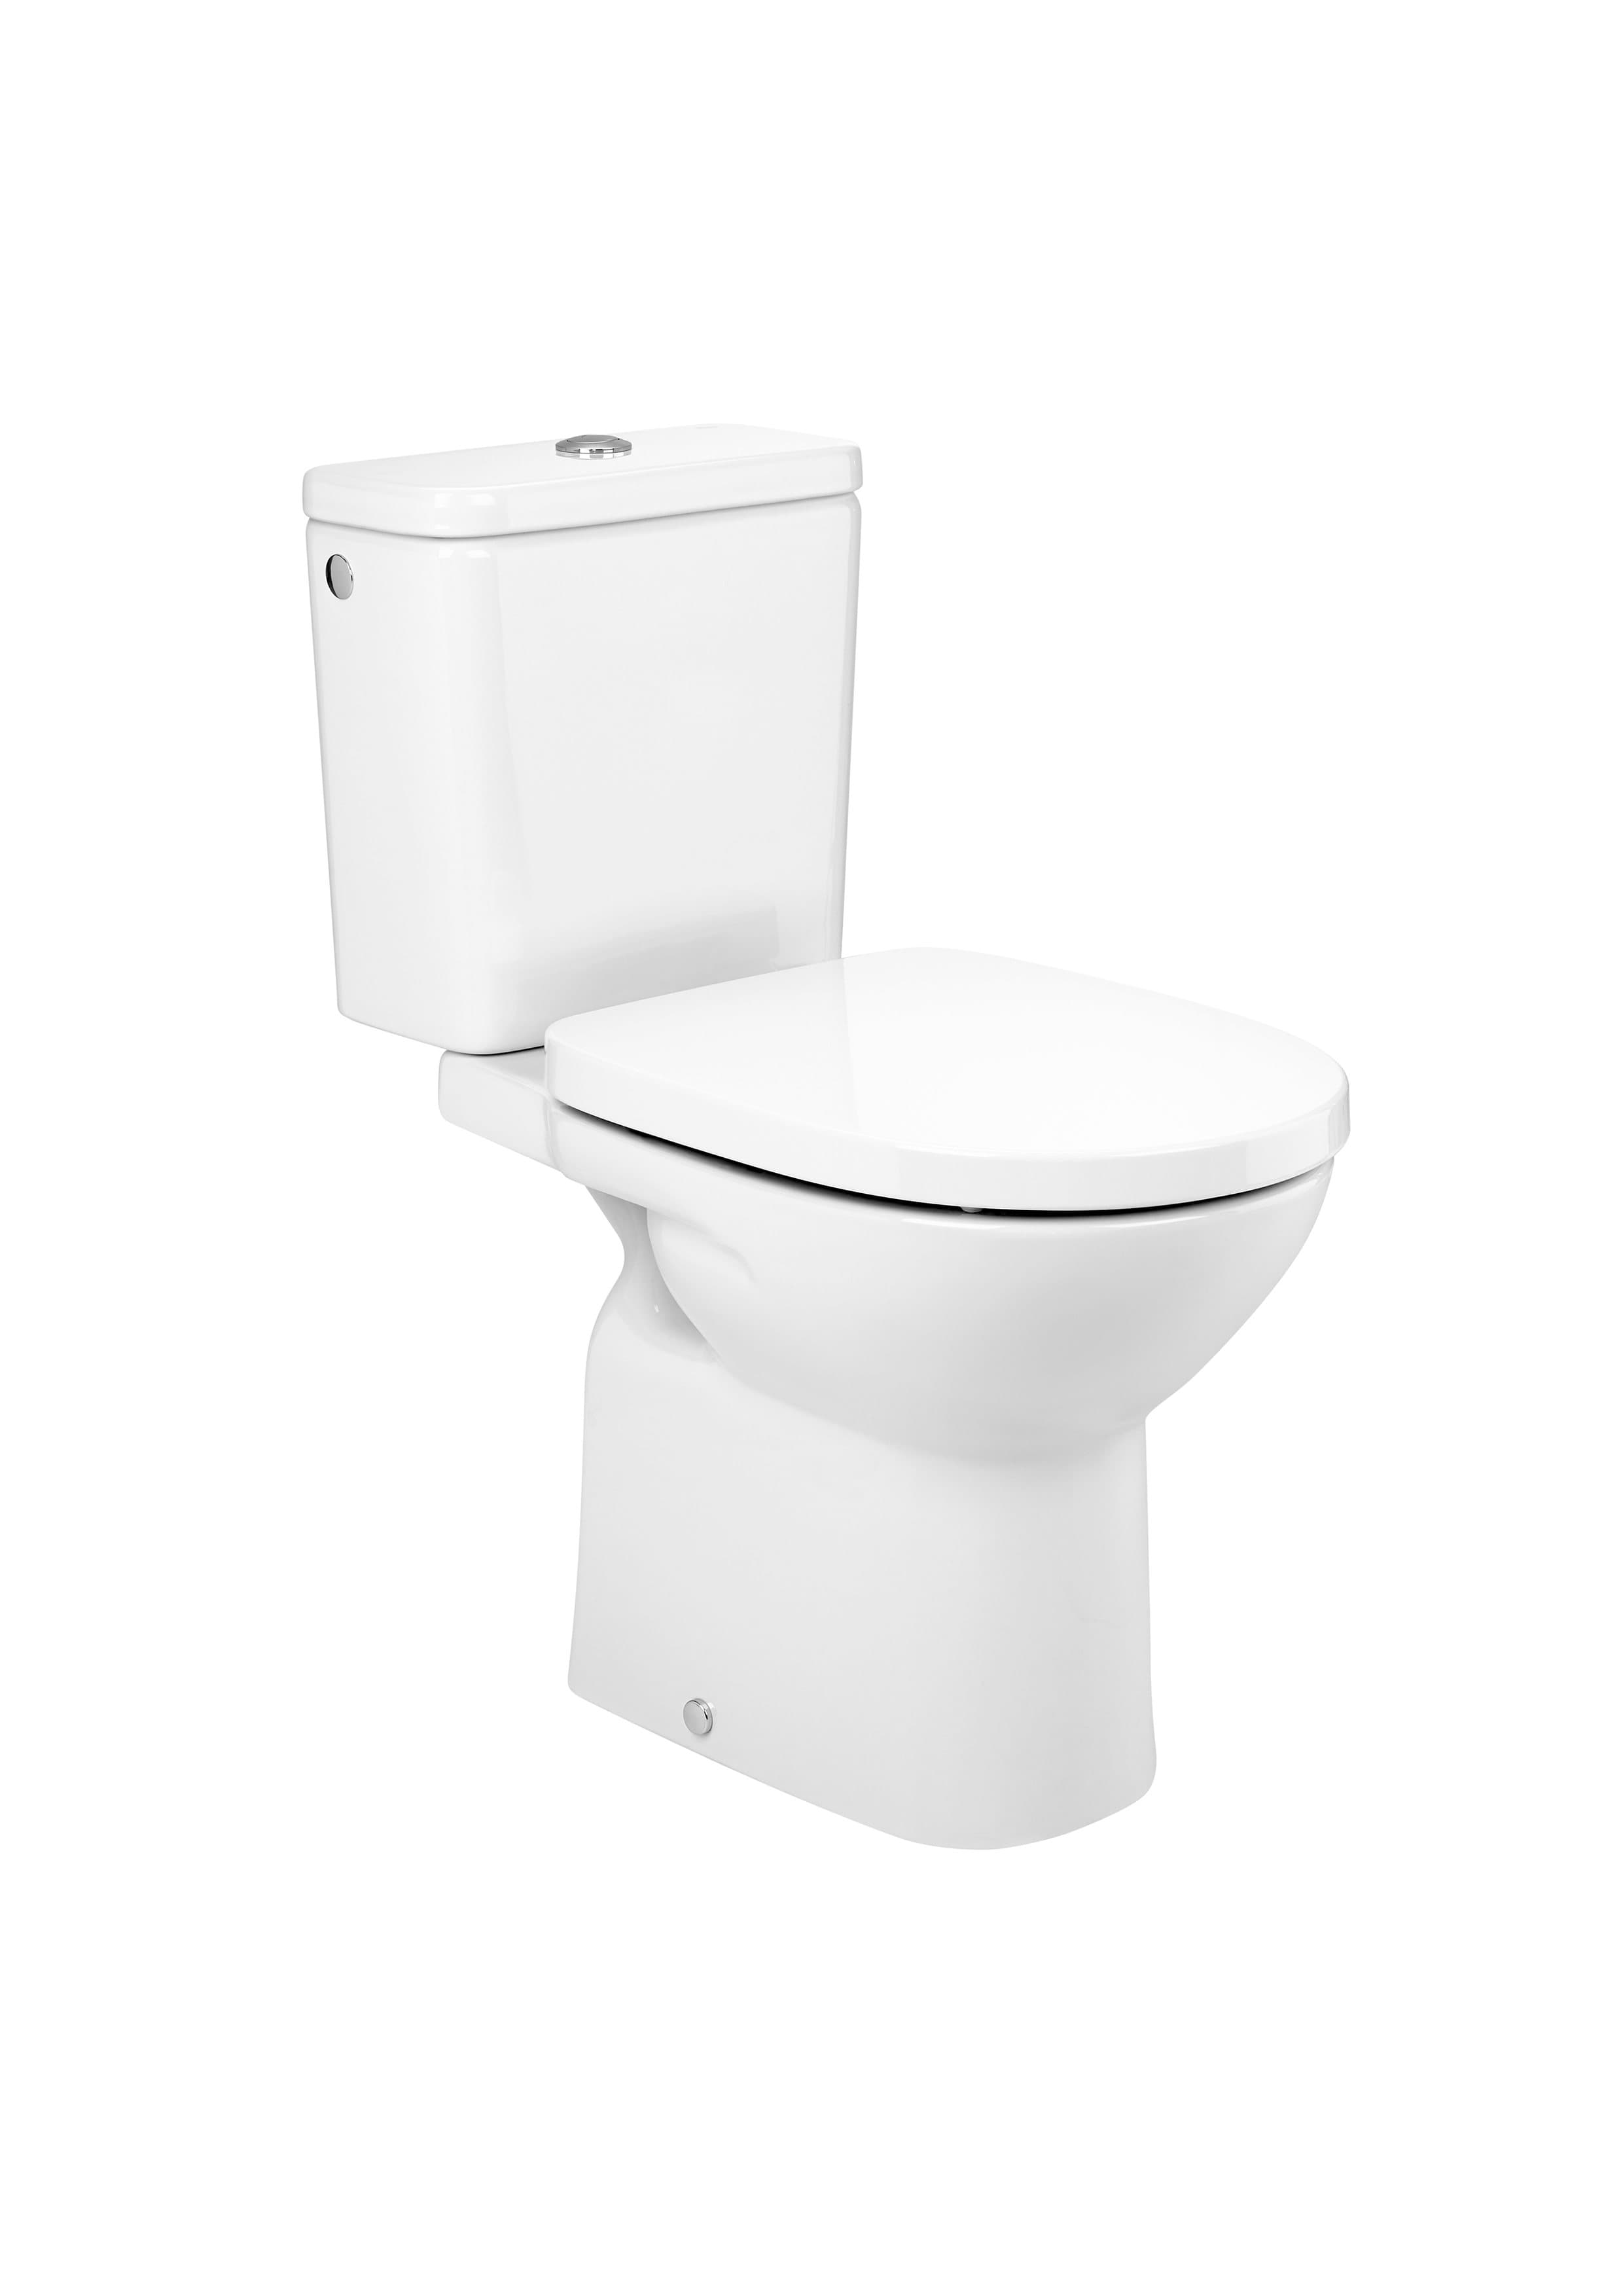 Sanitaire WC DEBBA A34299J000 ROUND - WC monobloc en porcelaine vitrifiée avec sortie horizontale Roca 1 - Mirage ceramica